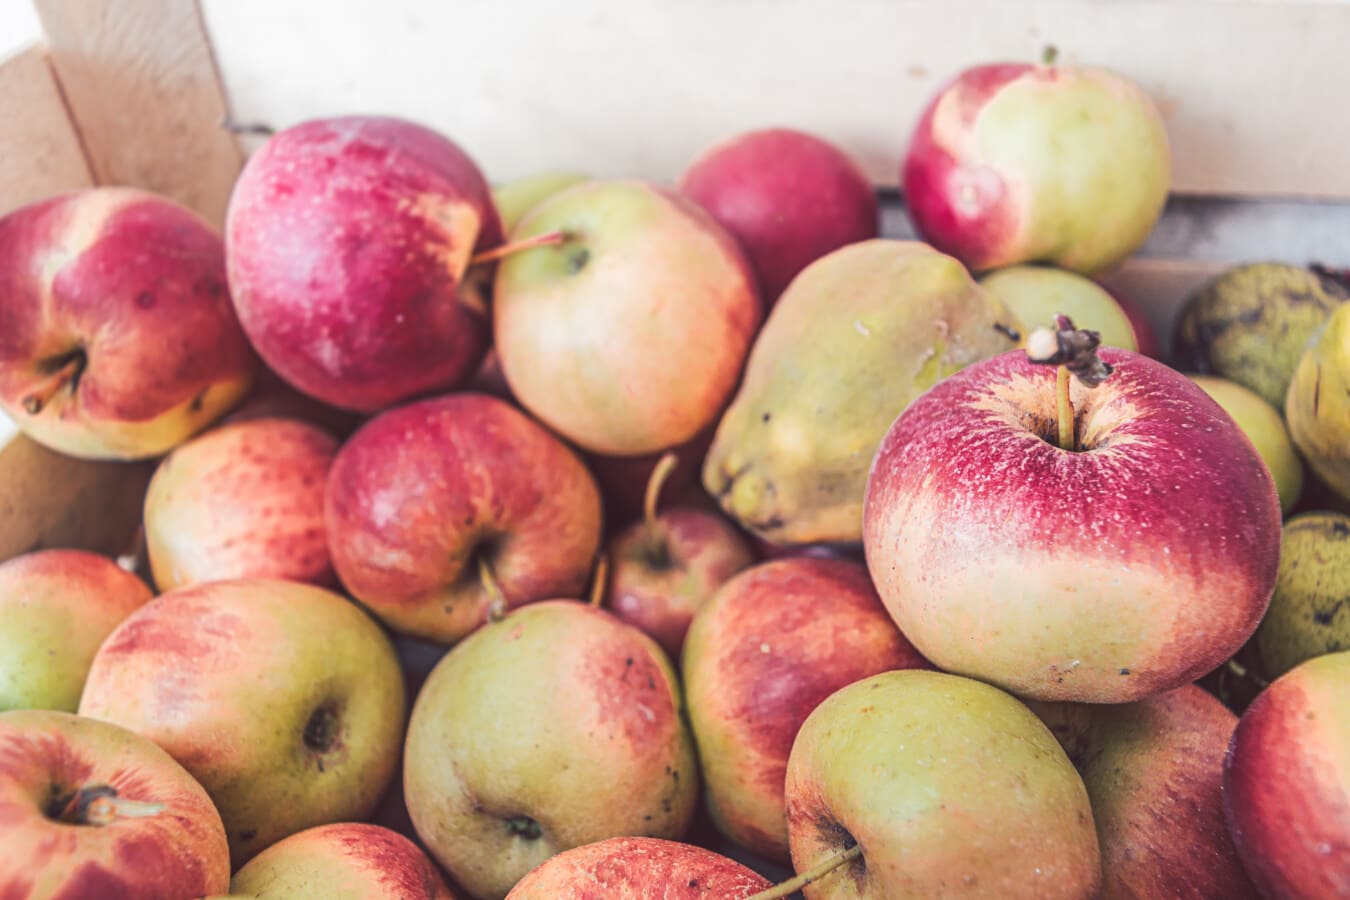 økologisk, æbler, frugt, moden frugt, produkter, landbrug, frisk, lækker, æble, sund